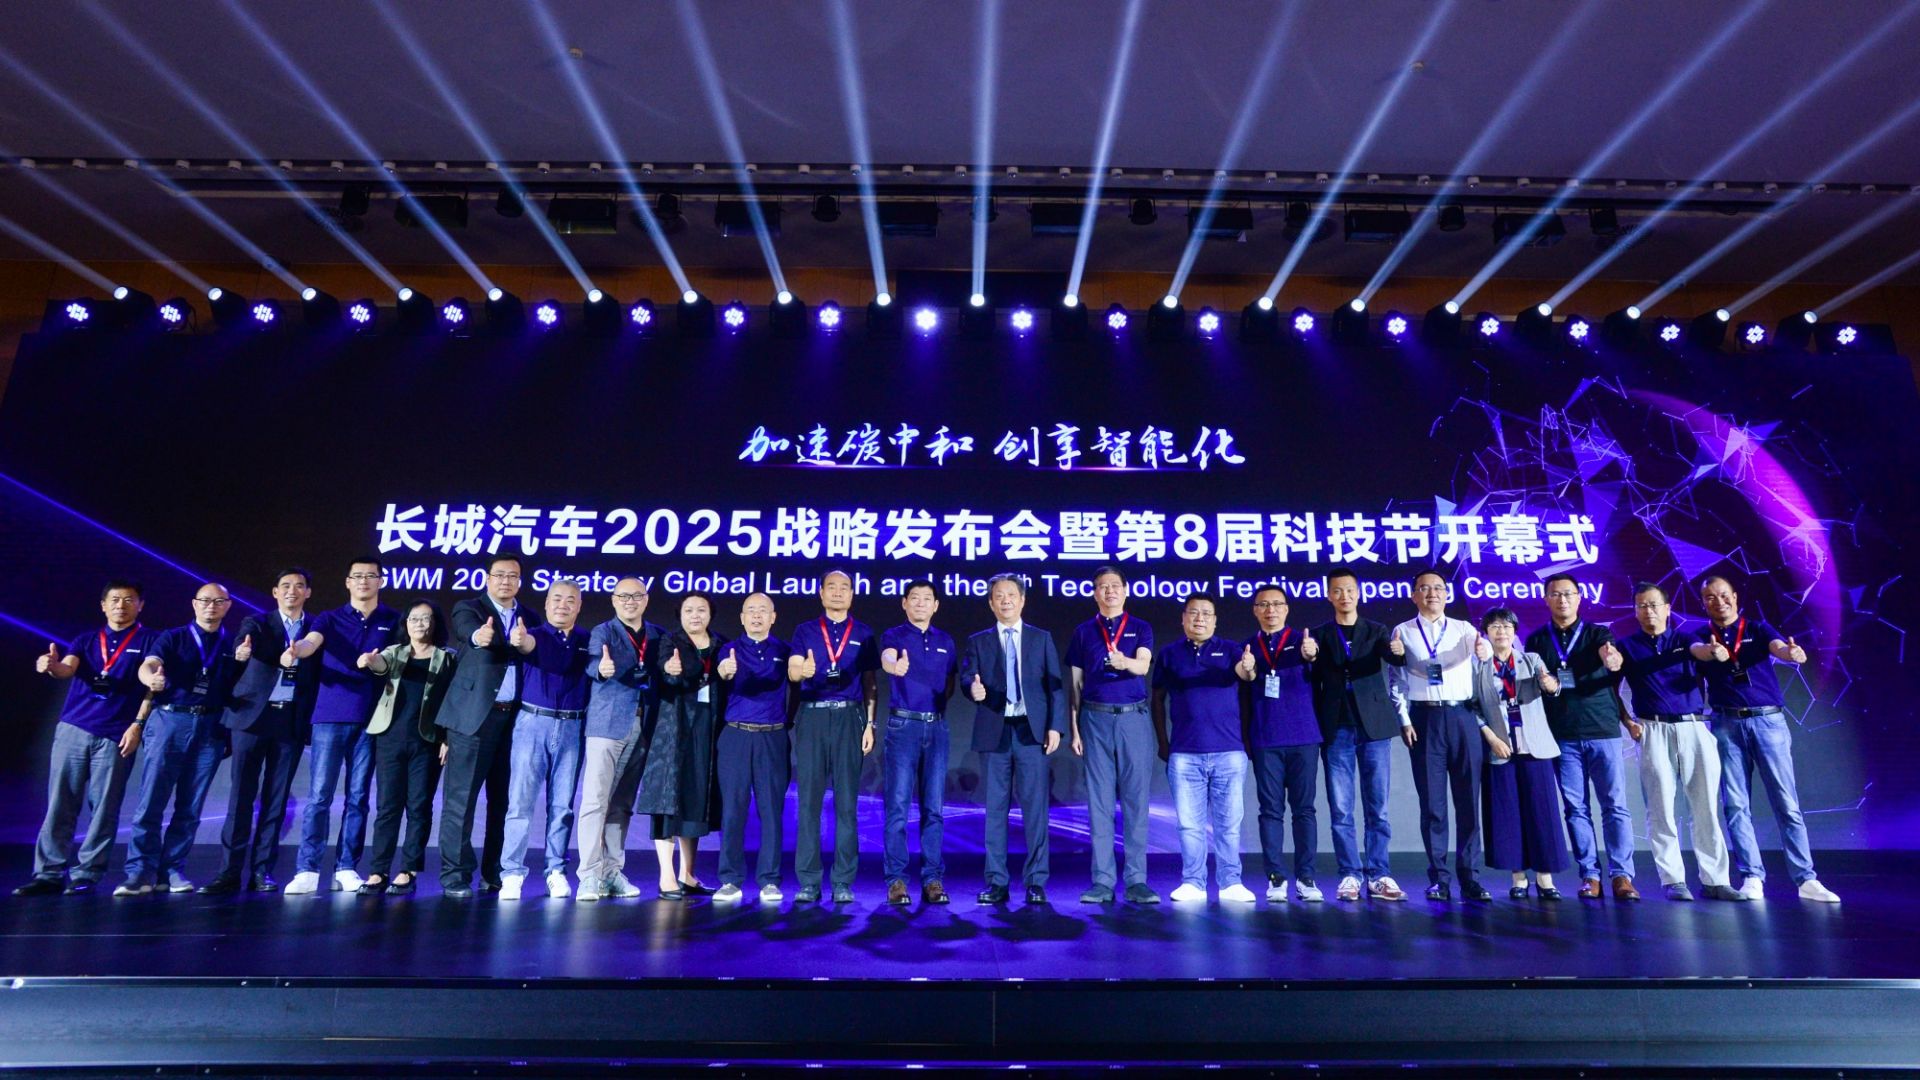 长城汽车第8届科技节开幕 正式发布2025战略